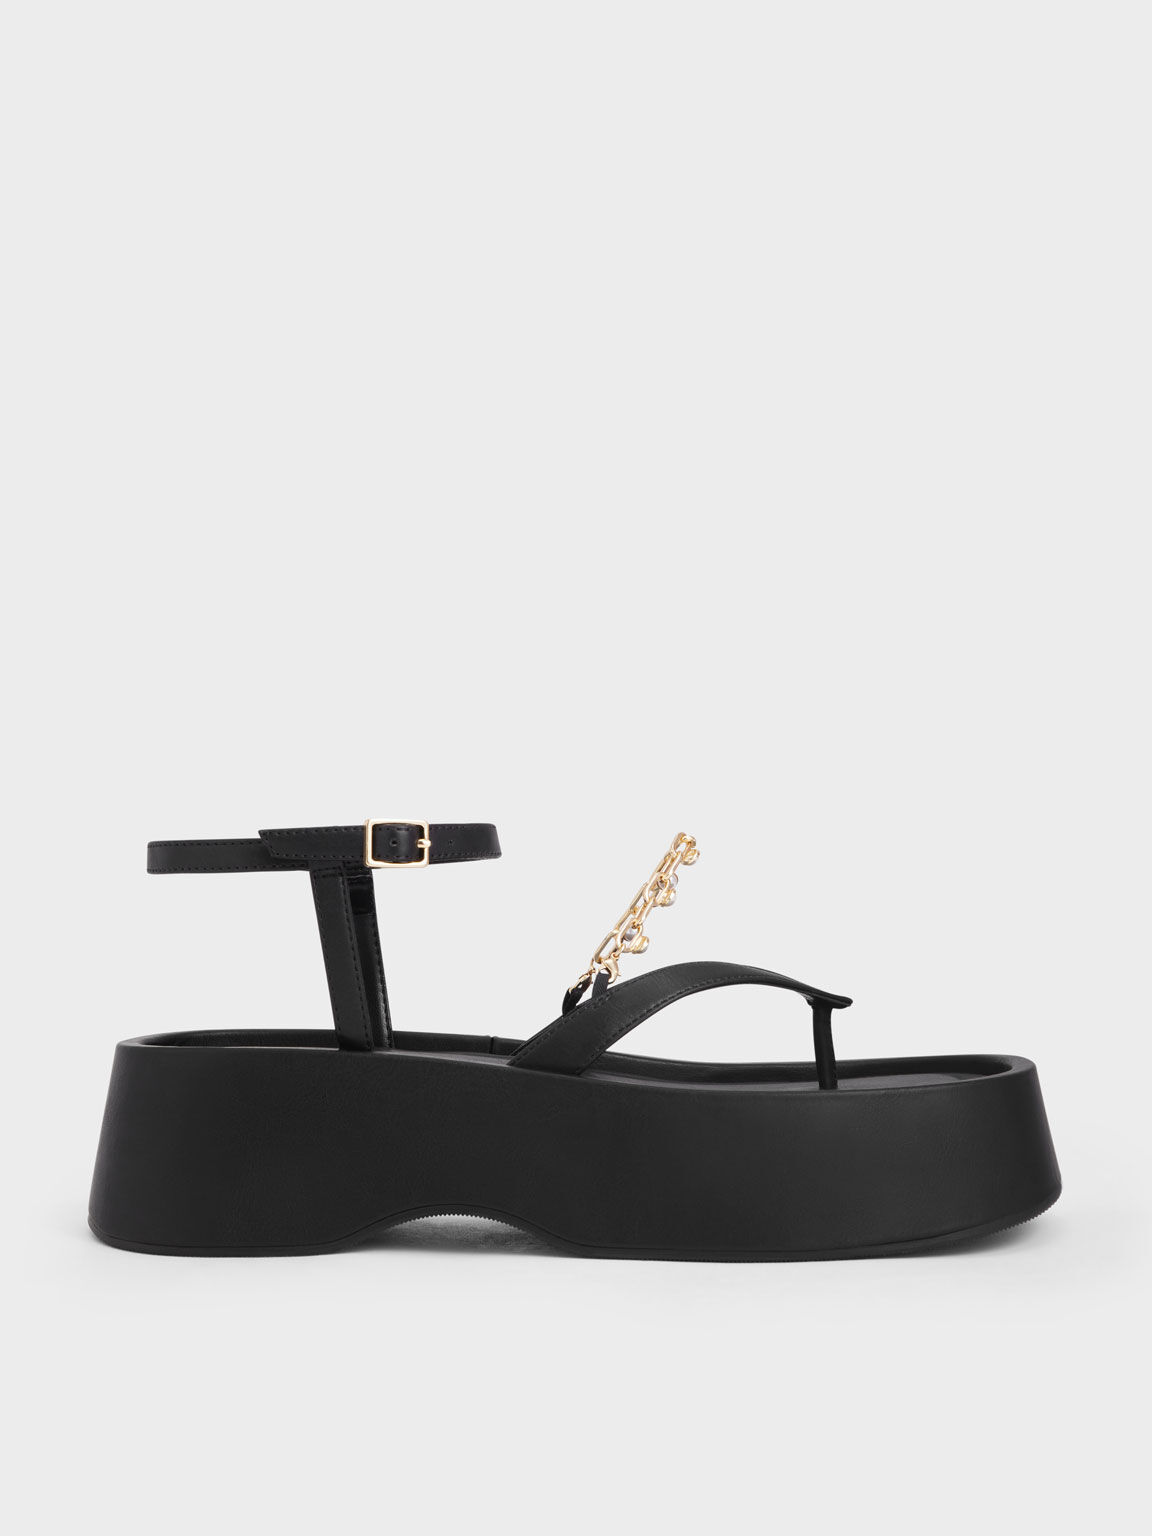 Savannah Chain-Embellished Ankle-Strap Flatforms, Black, hi-res